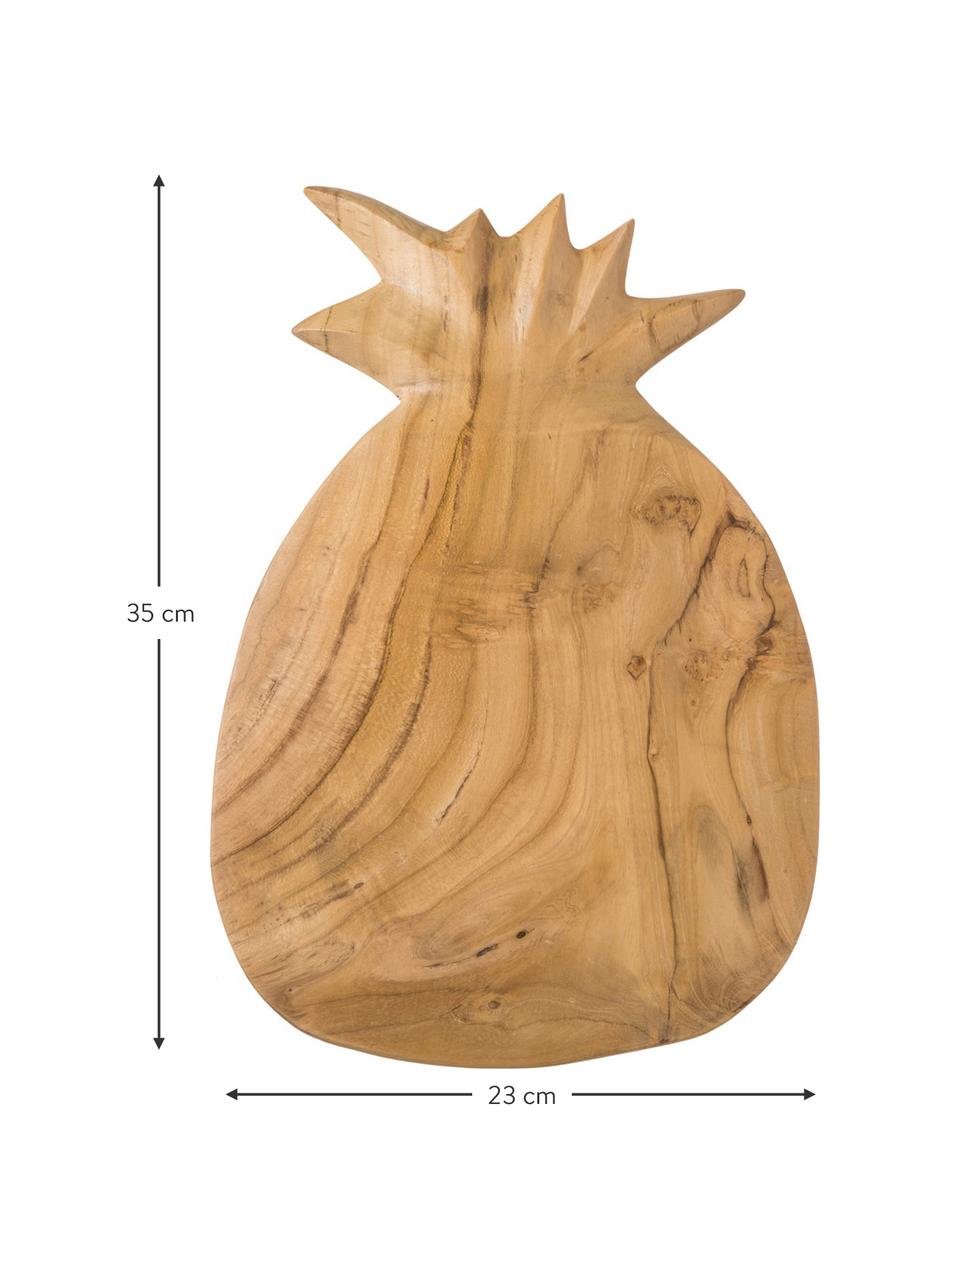 Schneidebrett Pine aus Teakholz, L 35 x B 23 cm, Teakholz, Teakholz, 23 x 35 cm